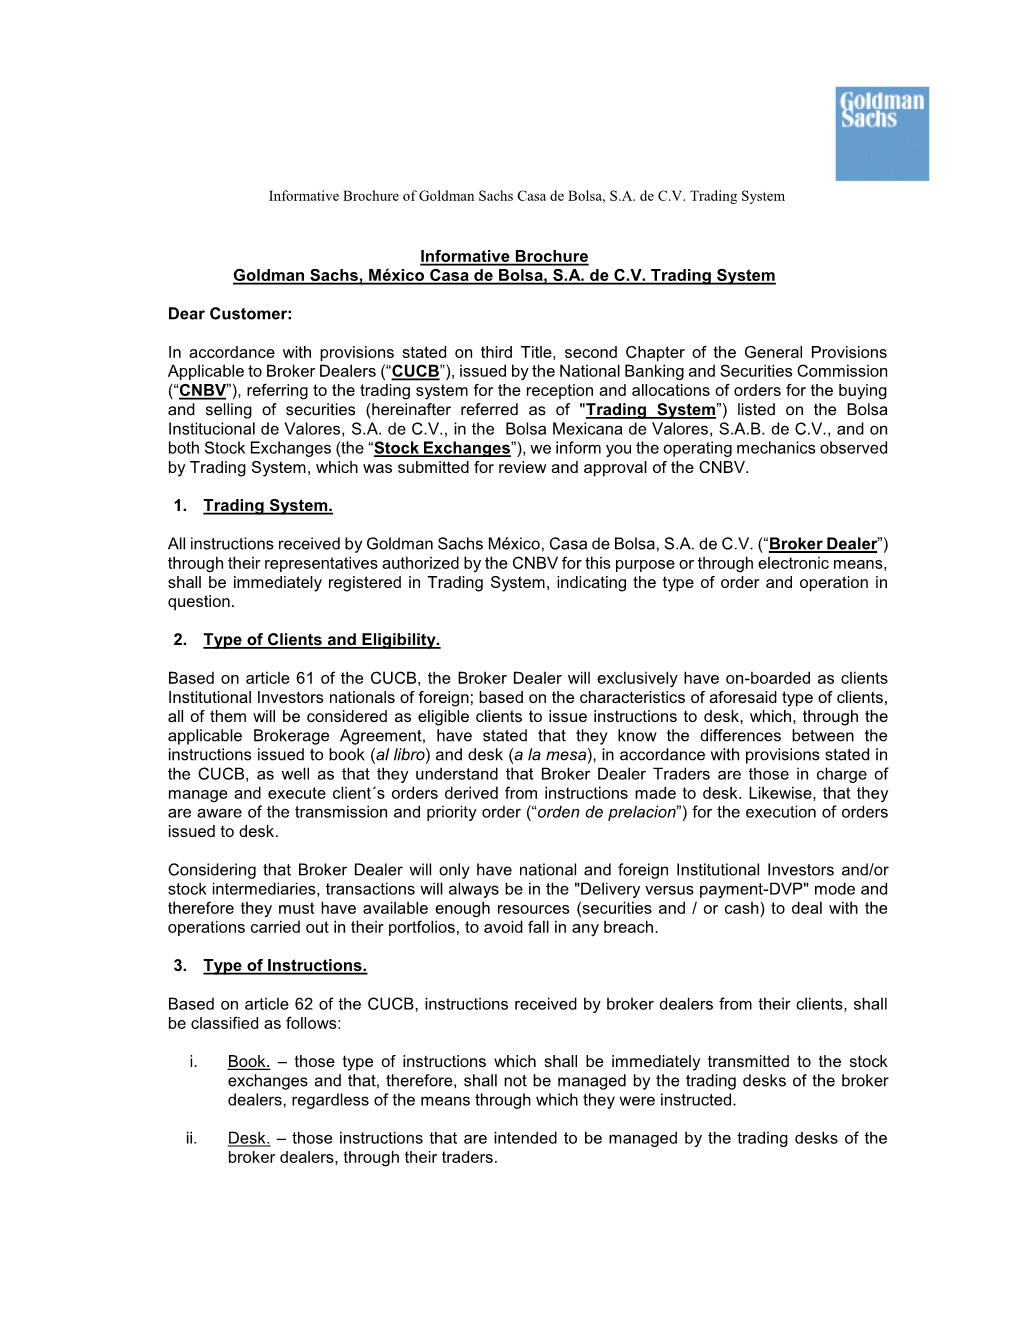 Informative Brochure of Goldman Sachs Casa De Bolsa, SA De CV